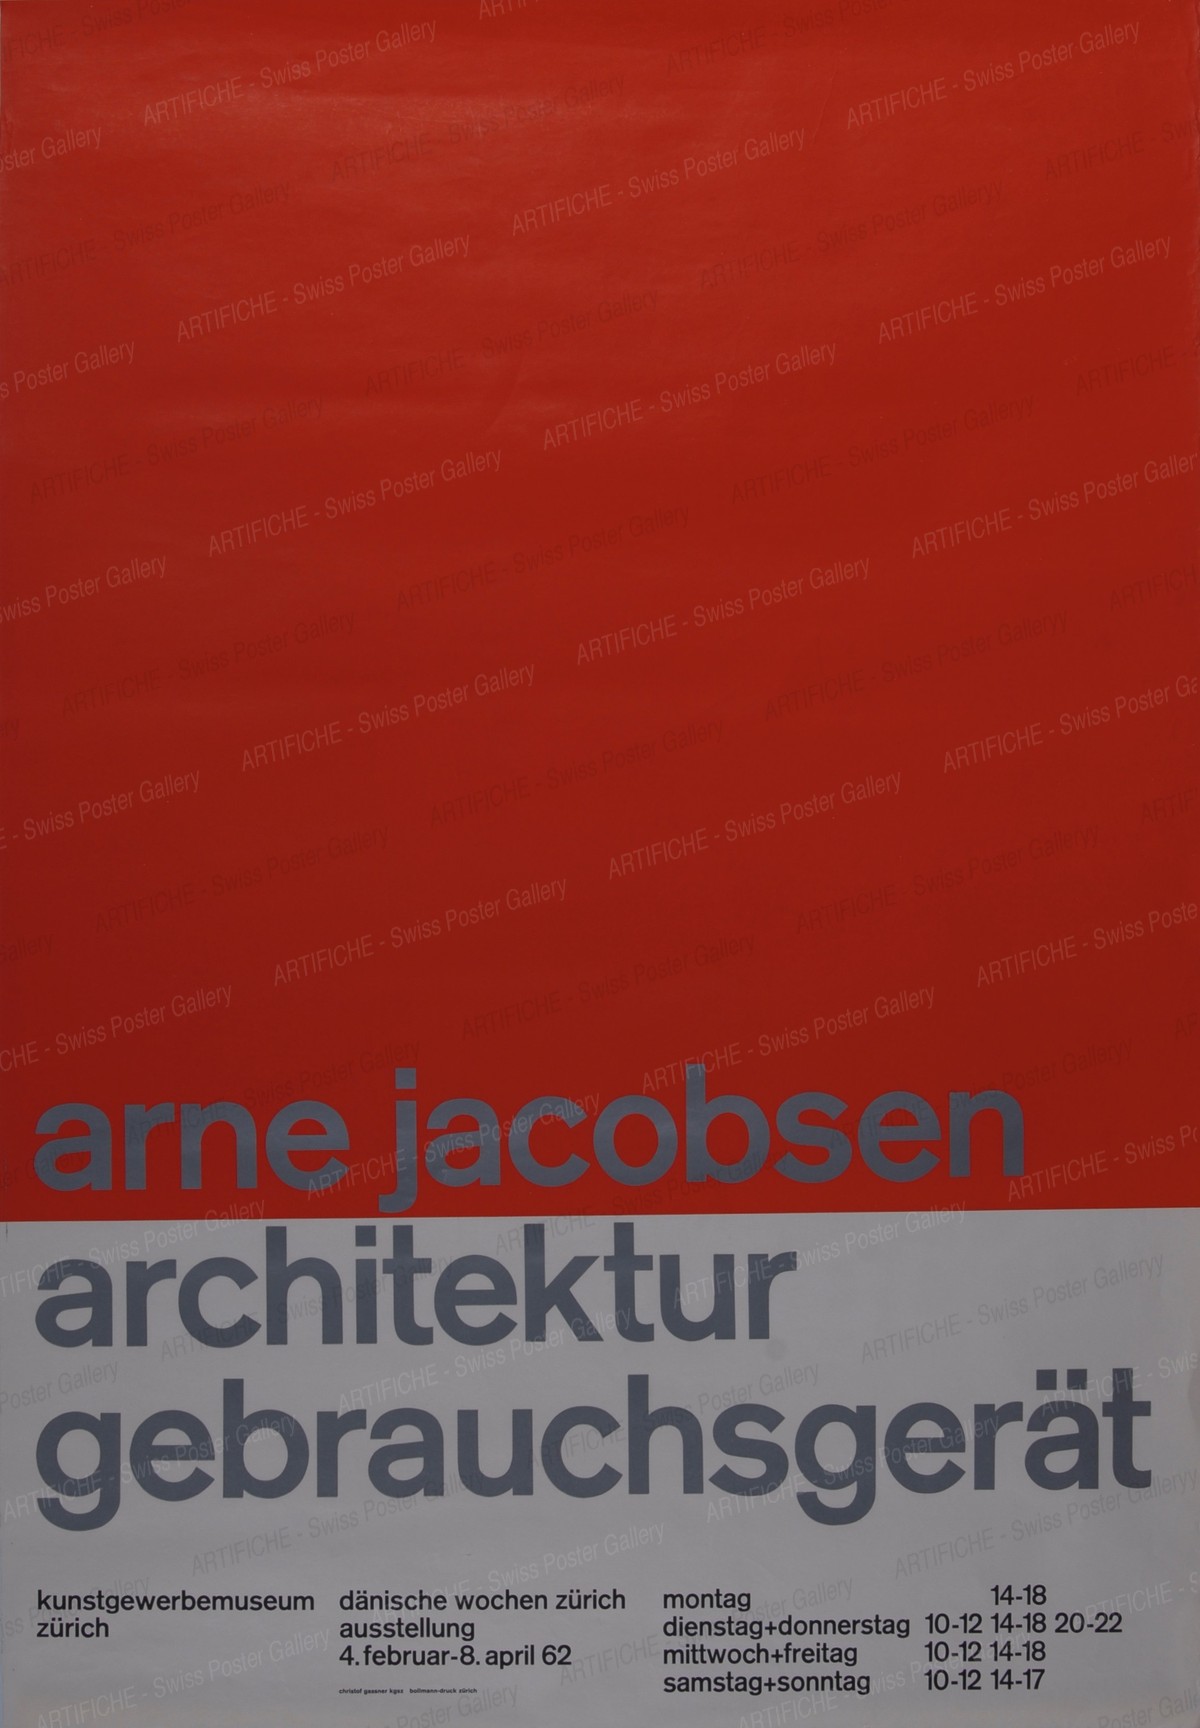 Kunstgewerbemuseum Zürich – Dänische Woche in Zürich 4. Februar bis 8. April 1962 – Arne Jacobsen, Christof Gassner